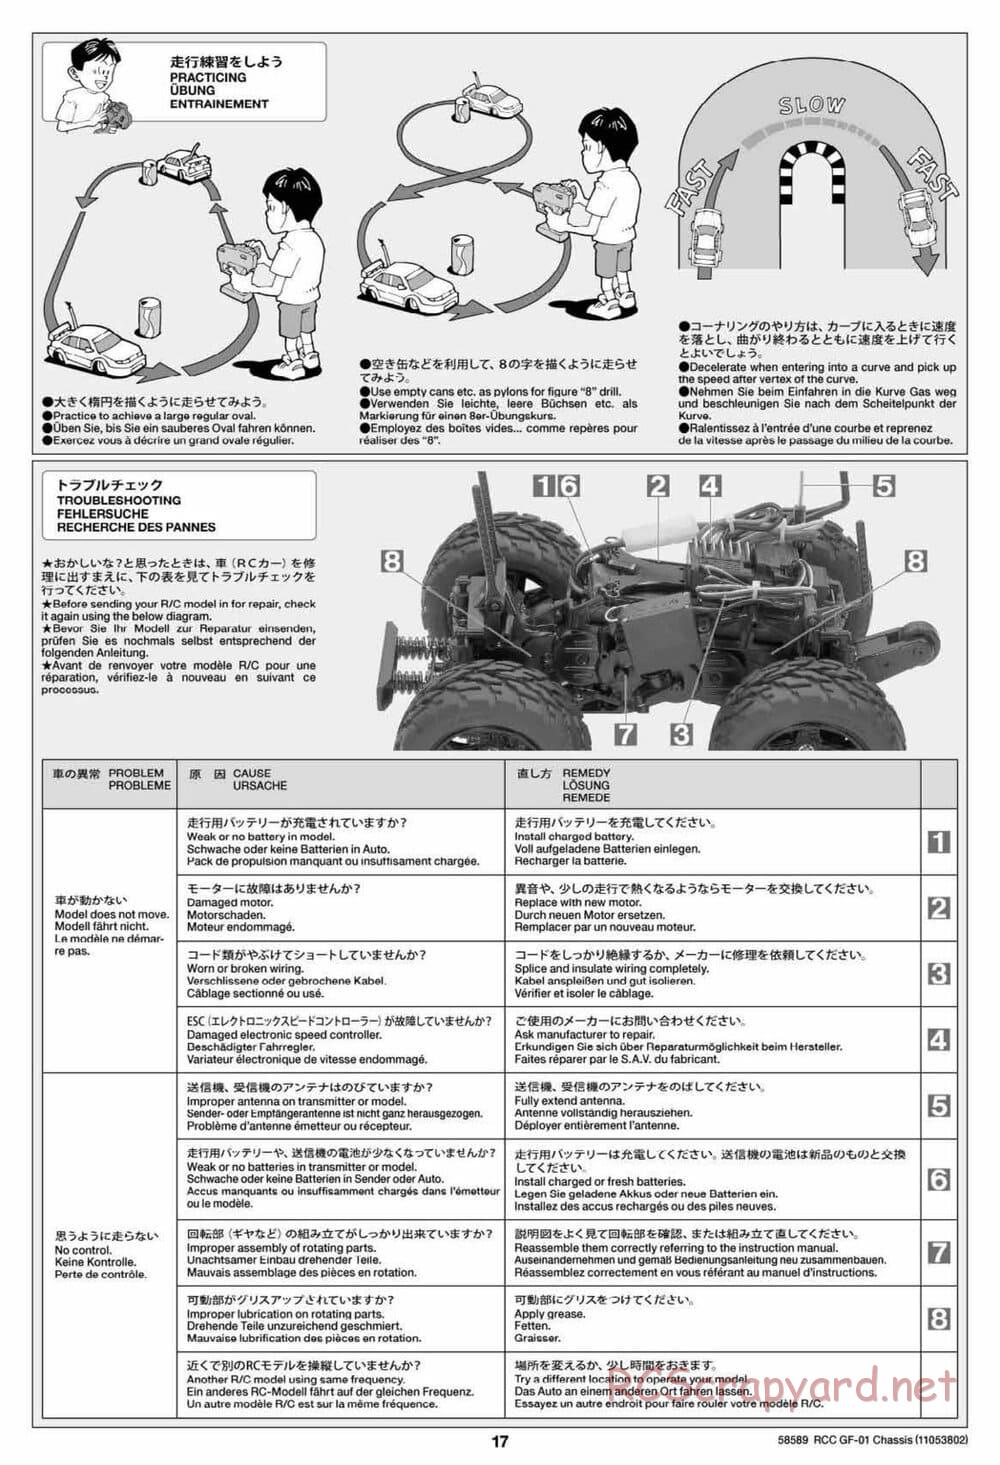 Tamiya - GF-01 Chassis - Manual - Page 17